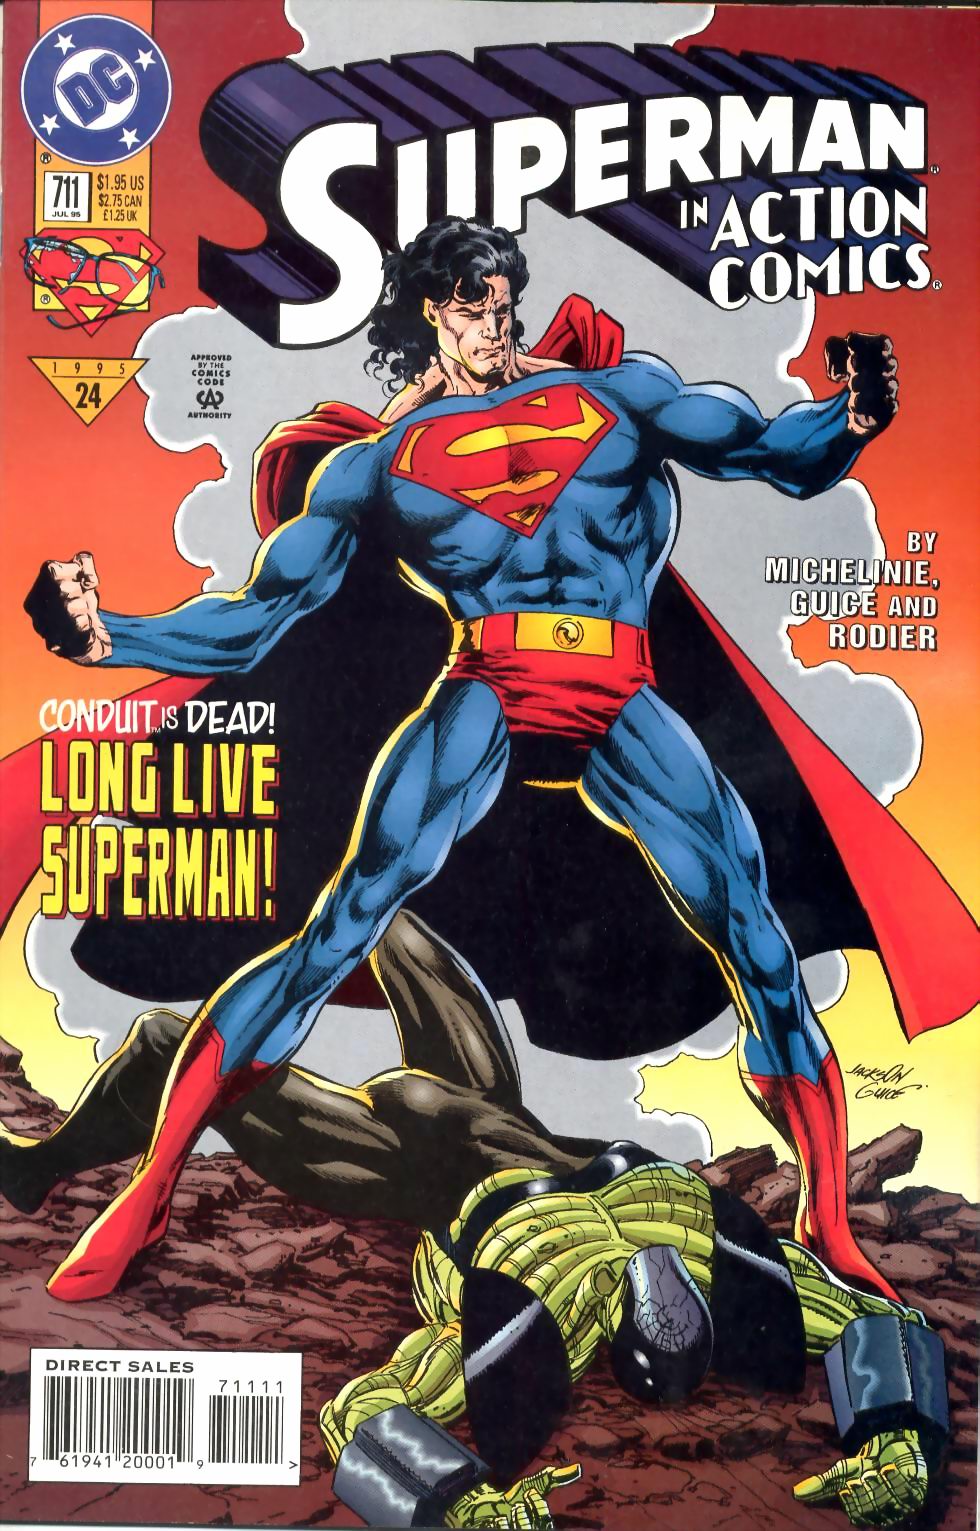 Action Comics Vol. 1 #711